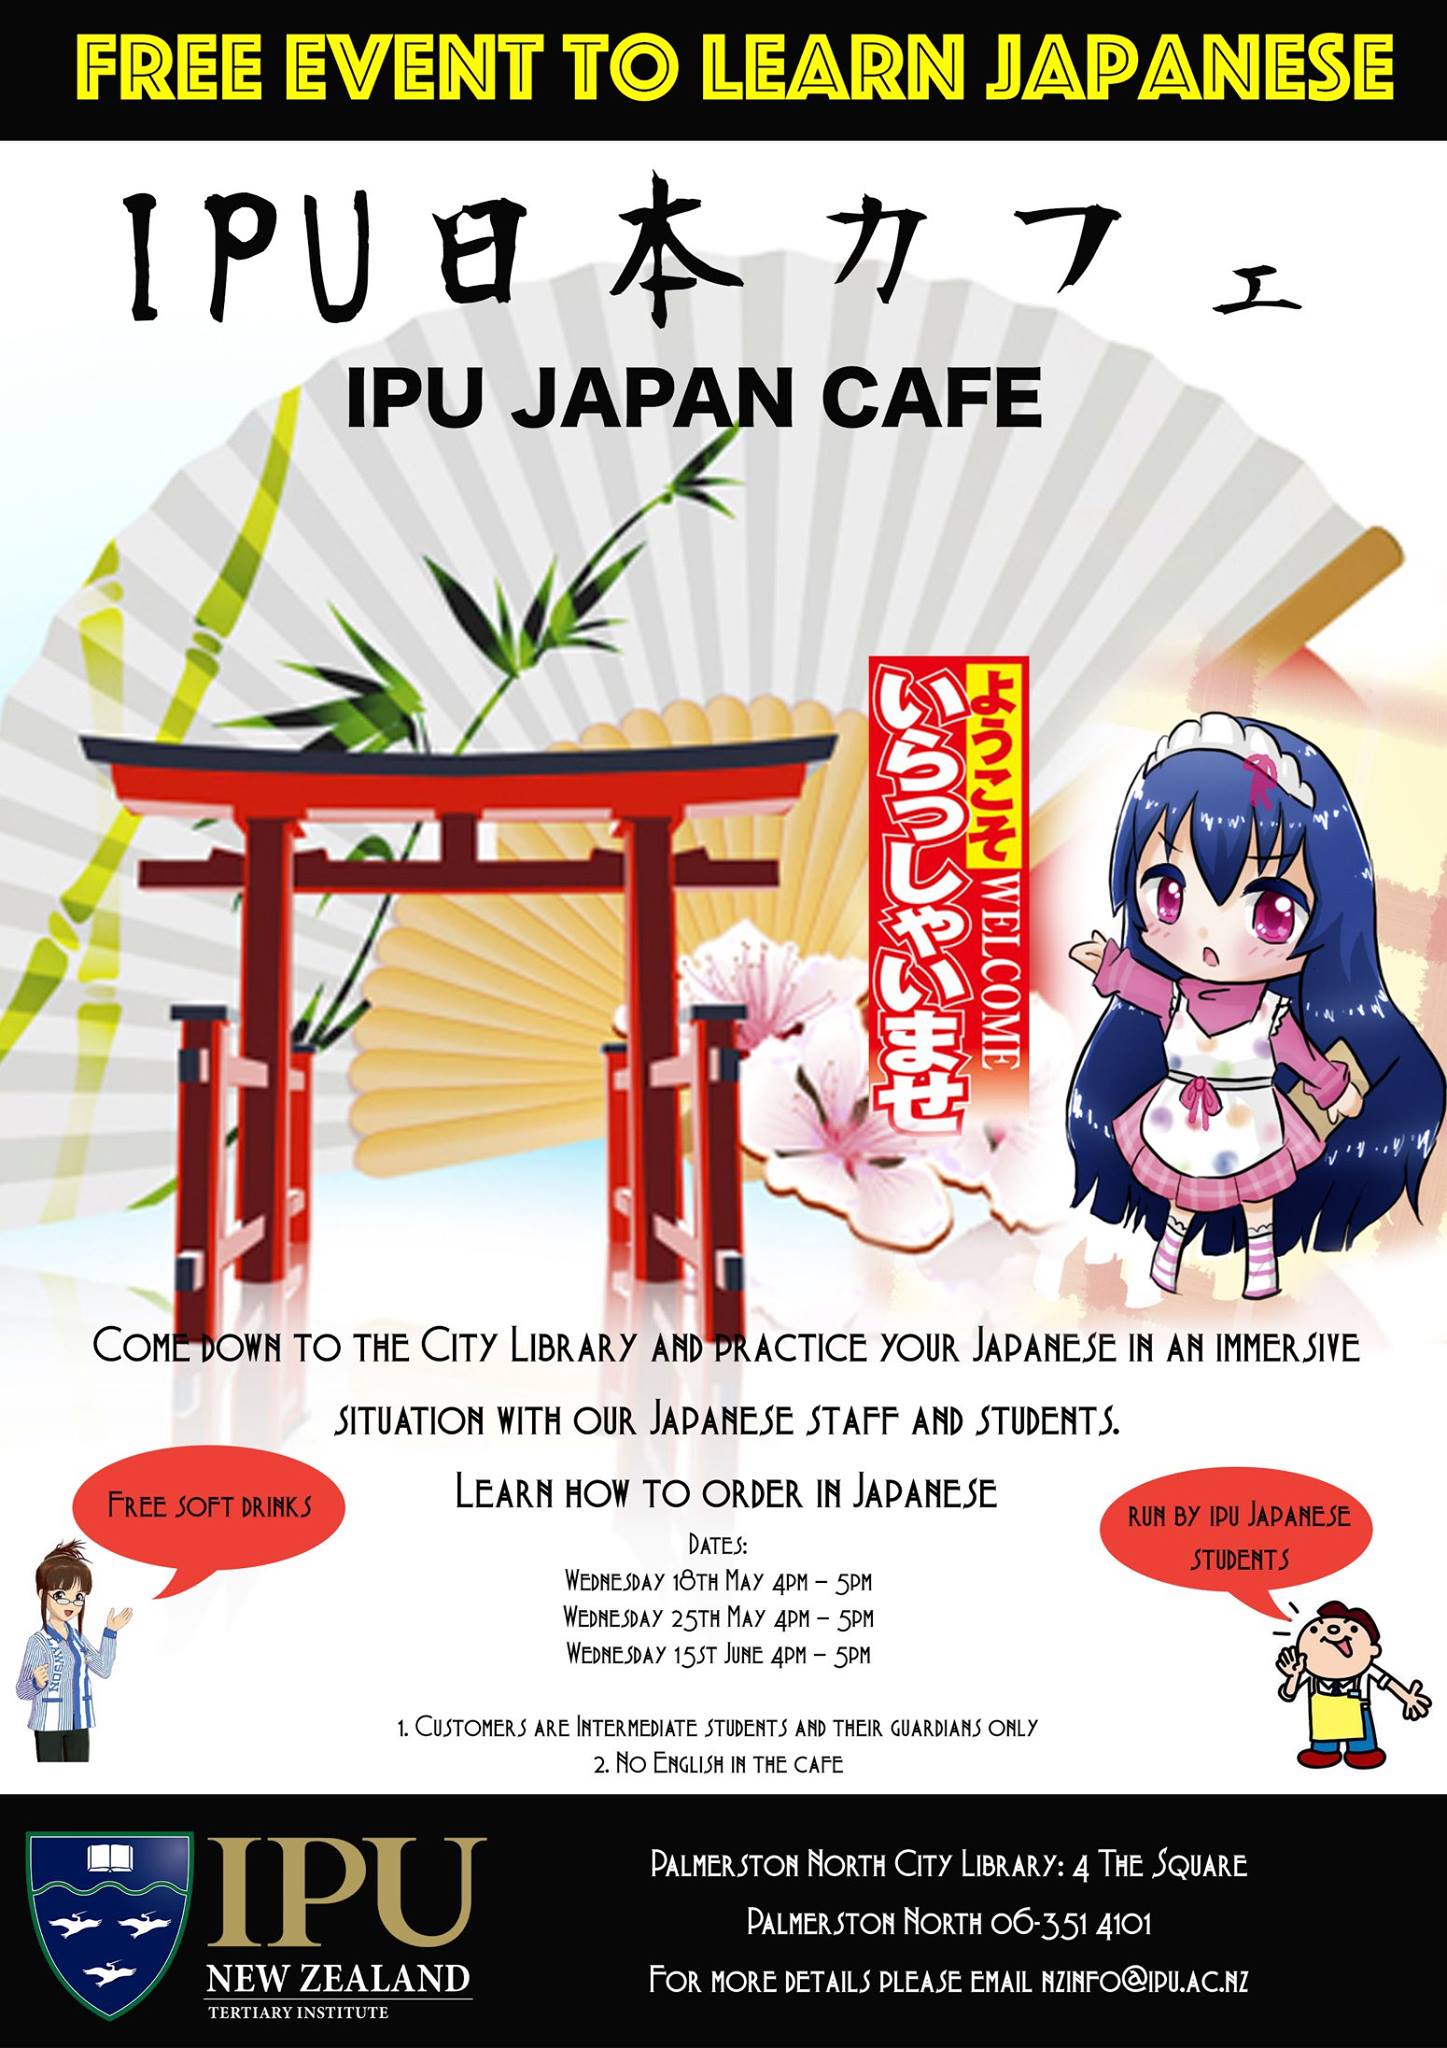 Japan cafe